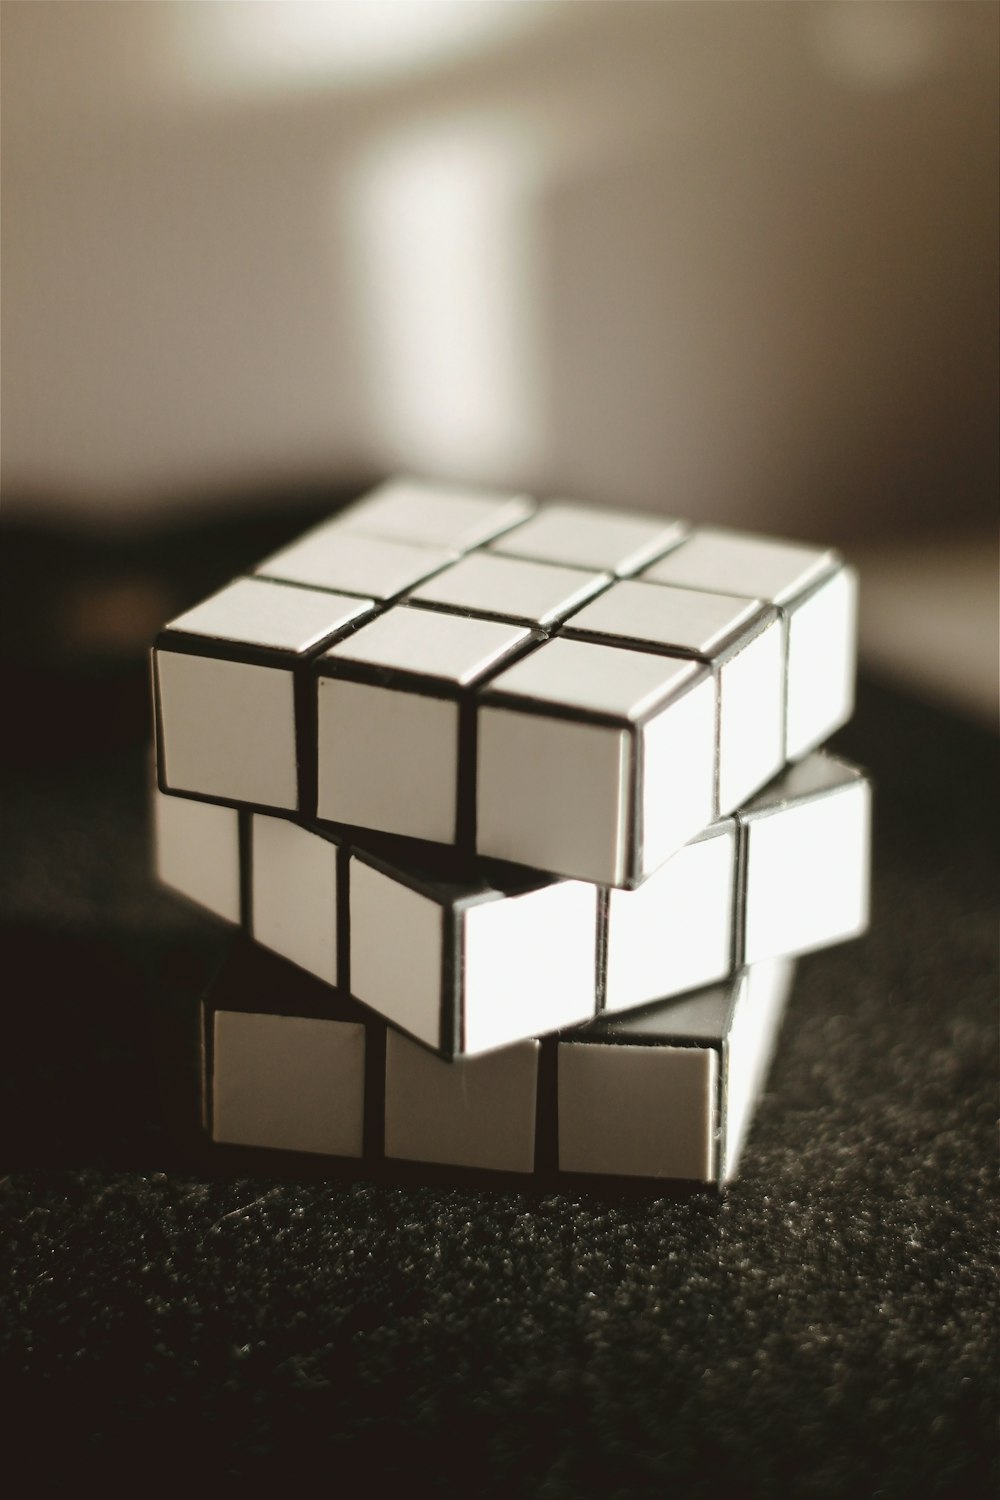 branco e preto 3 x 3 cubo mágico